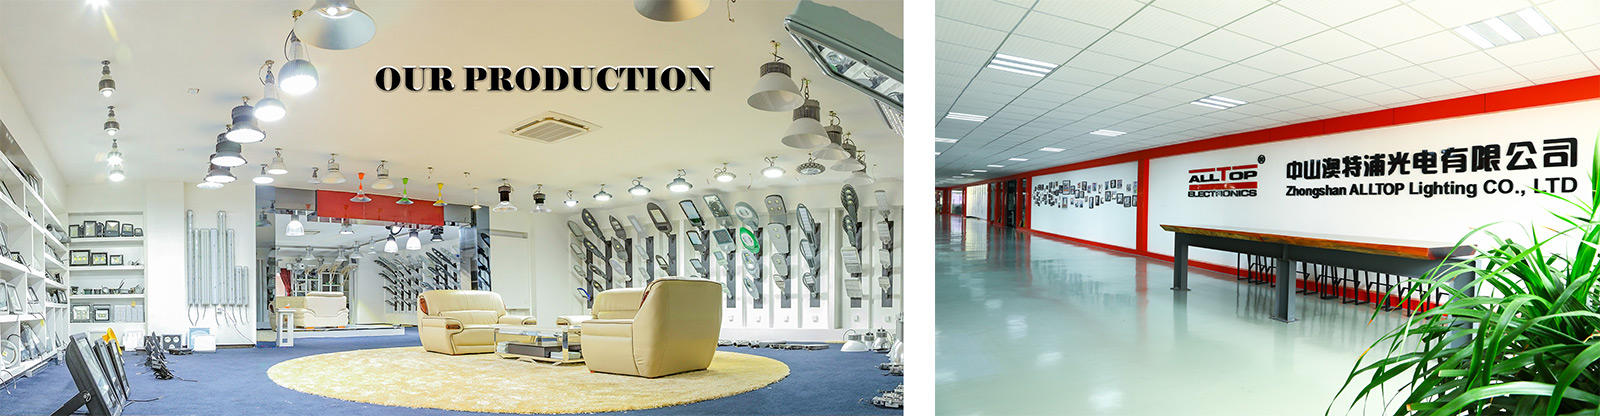 ALLTOP custom indoor solar lighting system supplier